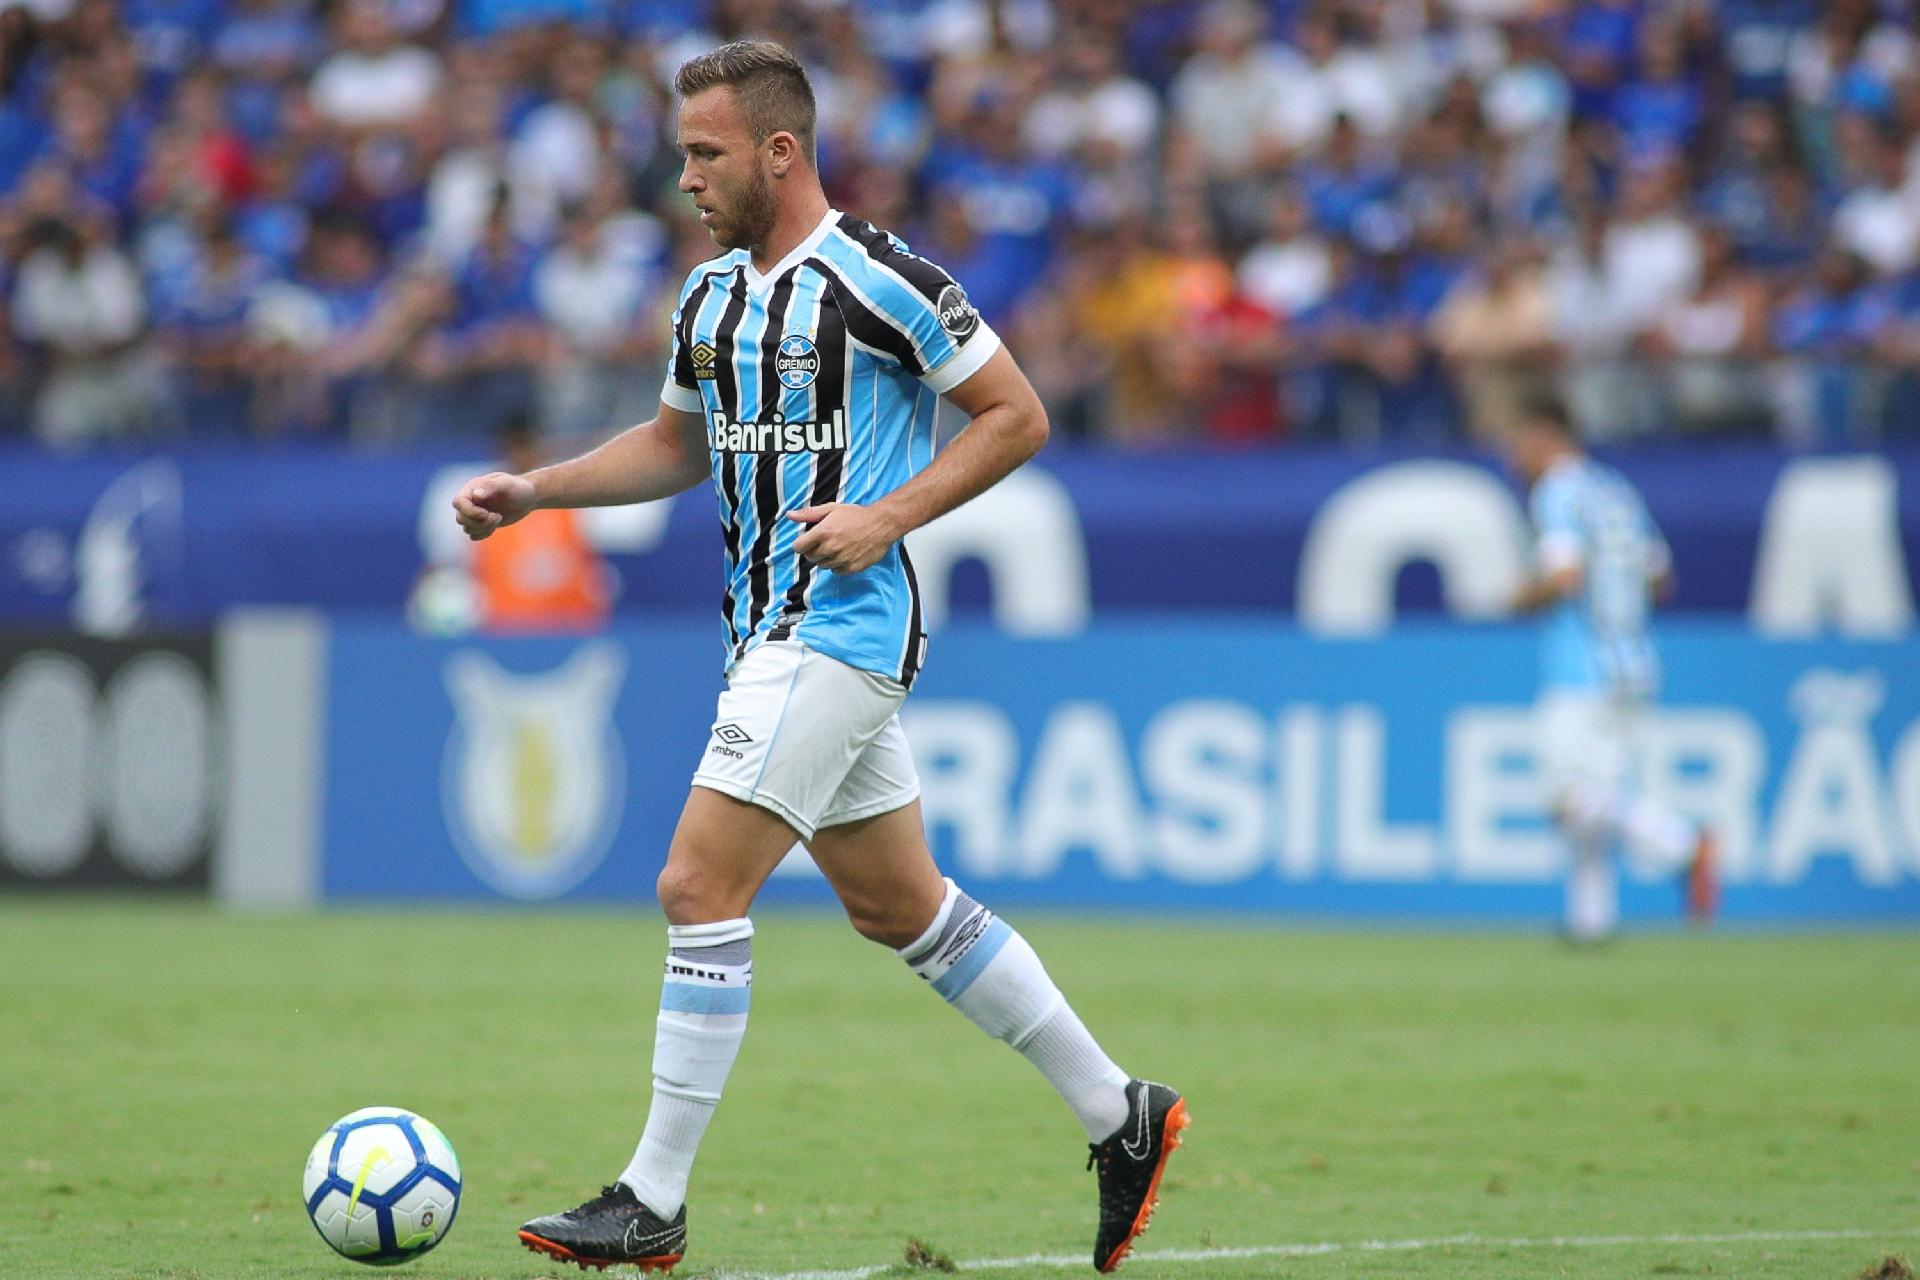 Contrato com Barça prevê bônus ao Grêmio se Arthur disputar Bola